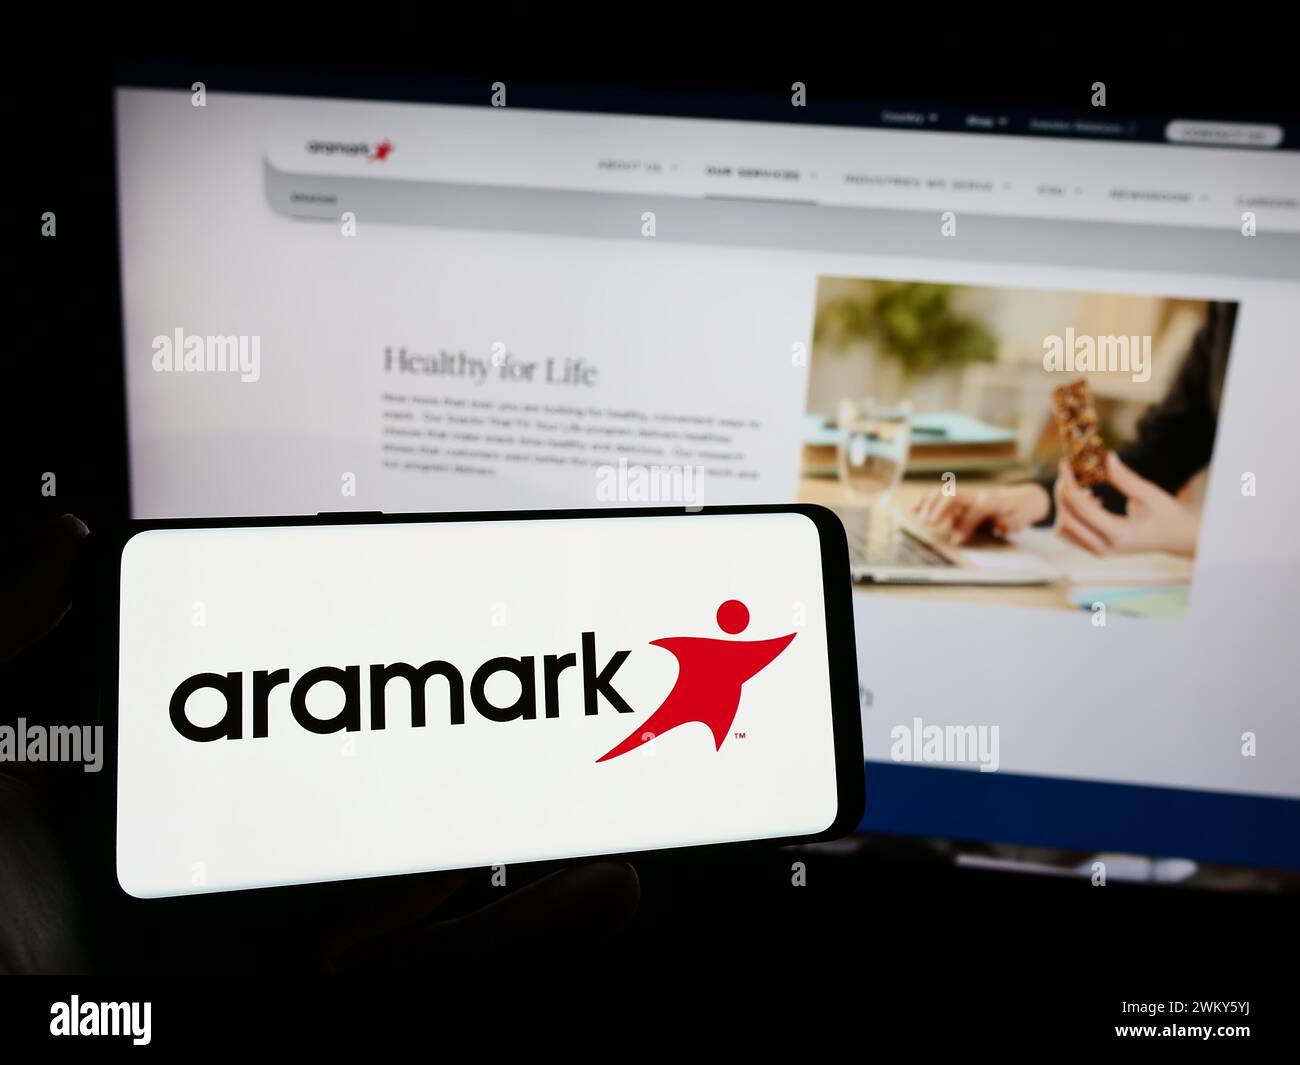 Personne tenant le téléphone portable avec le logo de la société américaine de services alimentaires et de gestion des installations Aramark en face de la page Web. Concentrez-vous sur l'affichage du téléphone. Banque D'Images